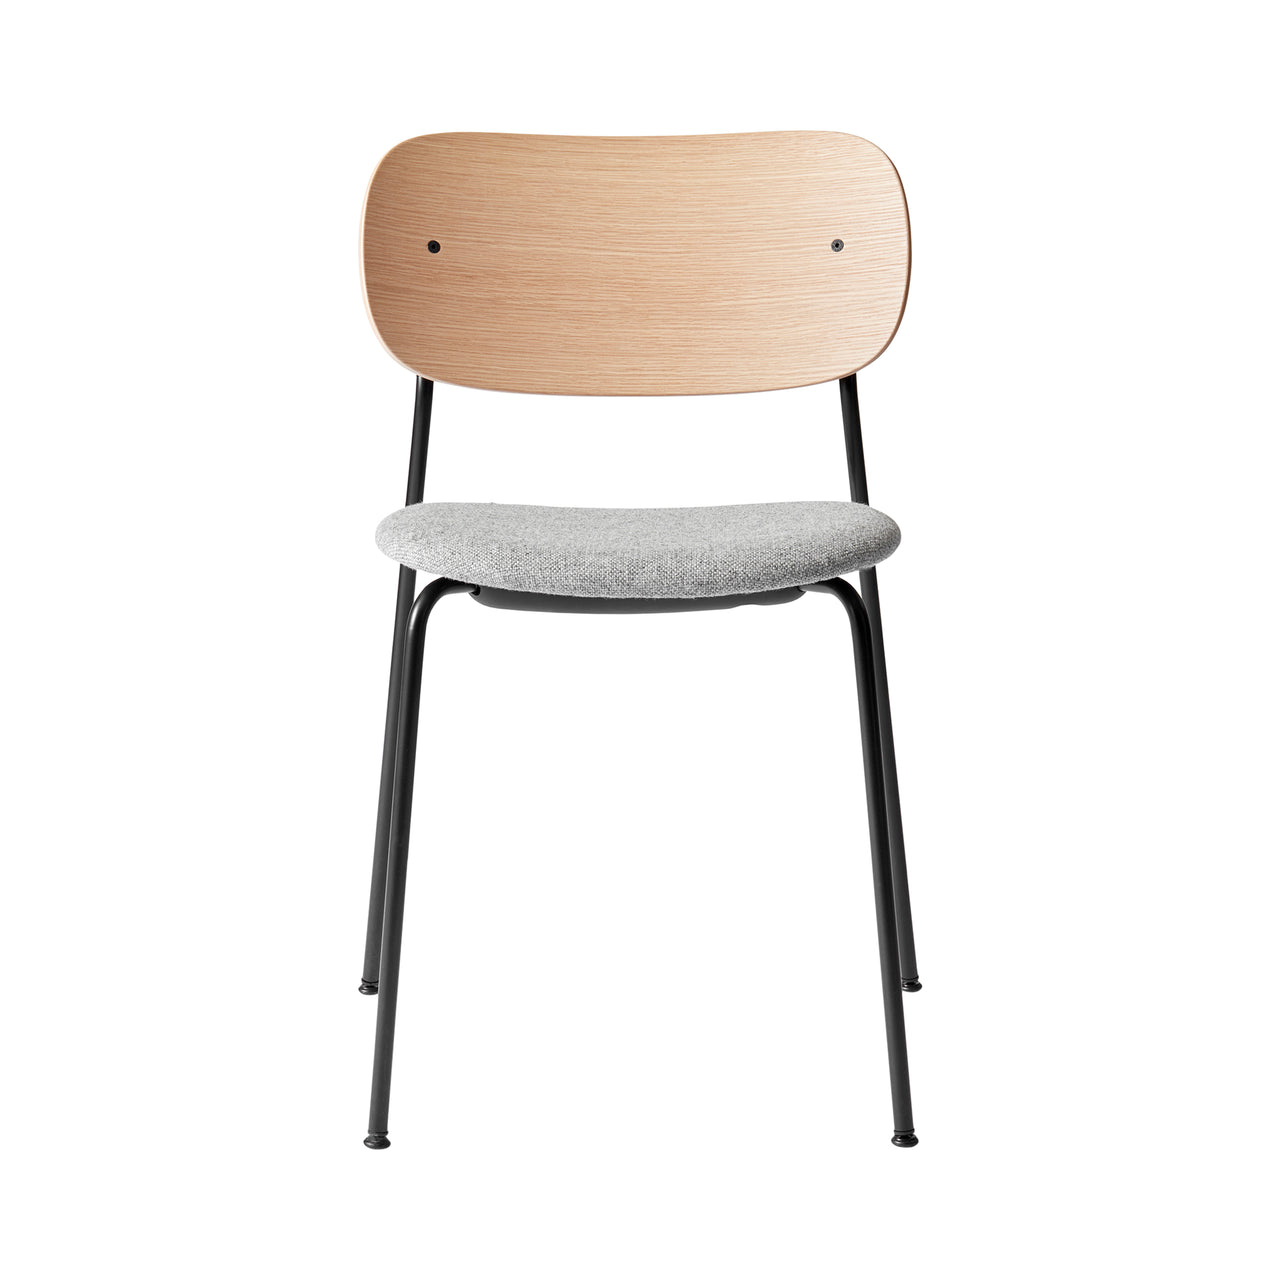 Co Chair: Seat Upholstered + Black + Natural Oak + Hallingdal65 0130